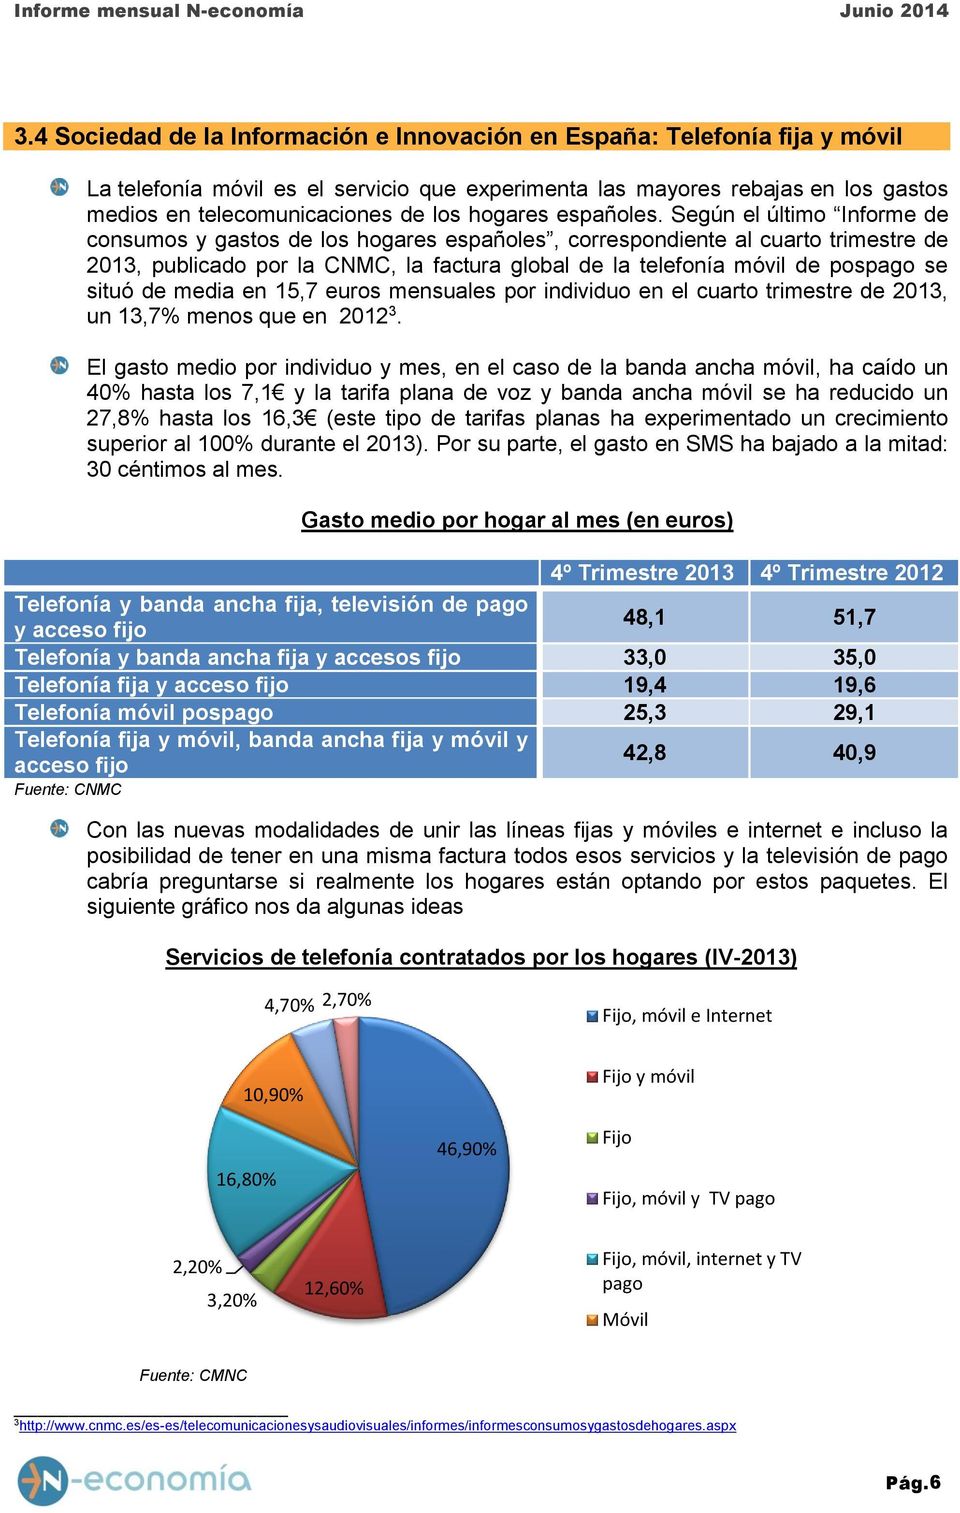 Según el último Informe de consumos y gastos de los hogares españoles, correspondiente al cuarto trimestre de 2013, publicado por la CNMC, la factura global de la telefonía móvil de pospago se situó